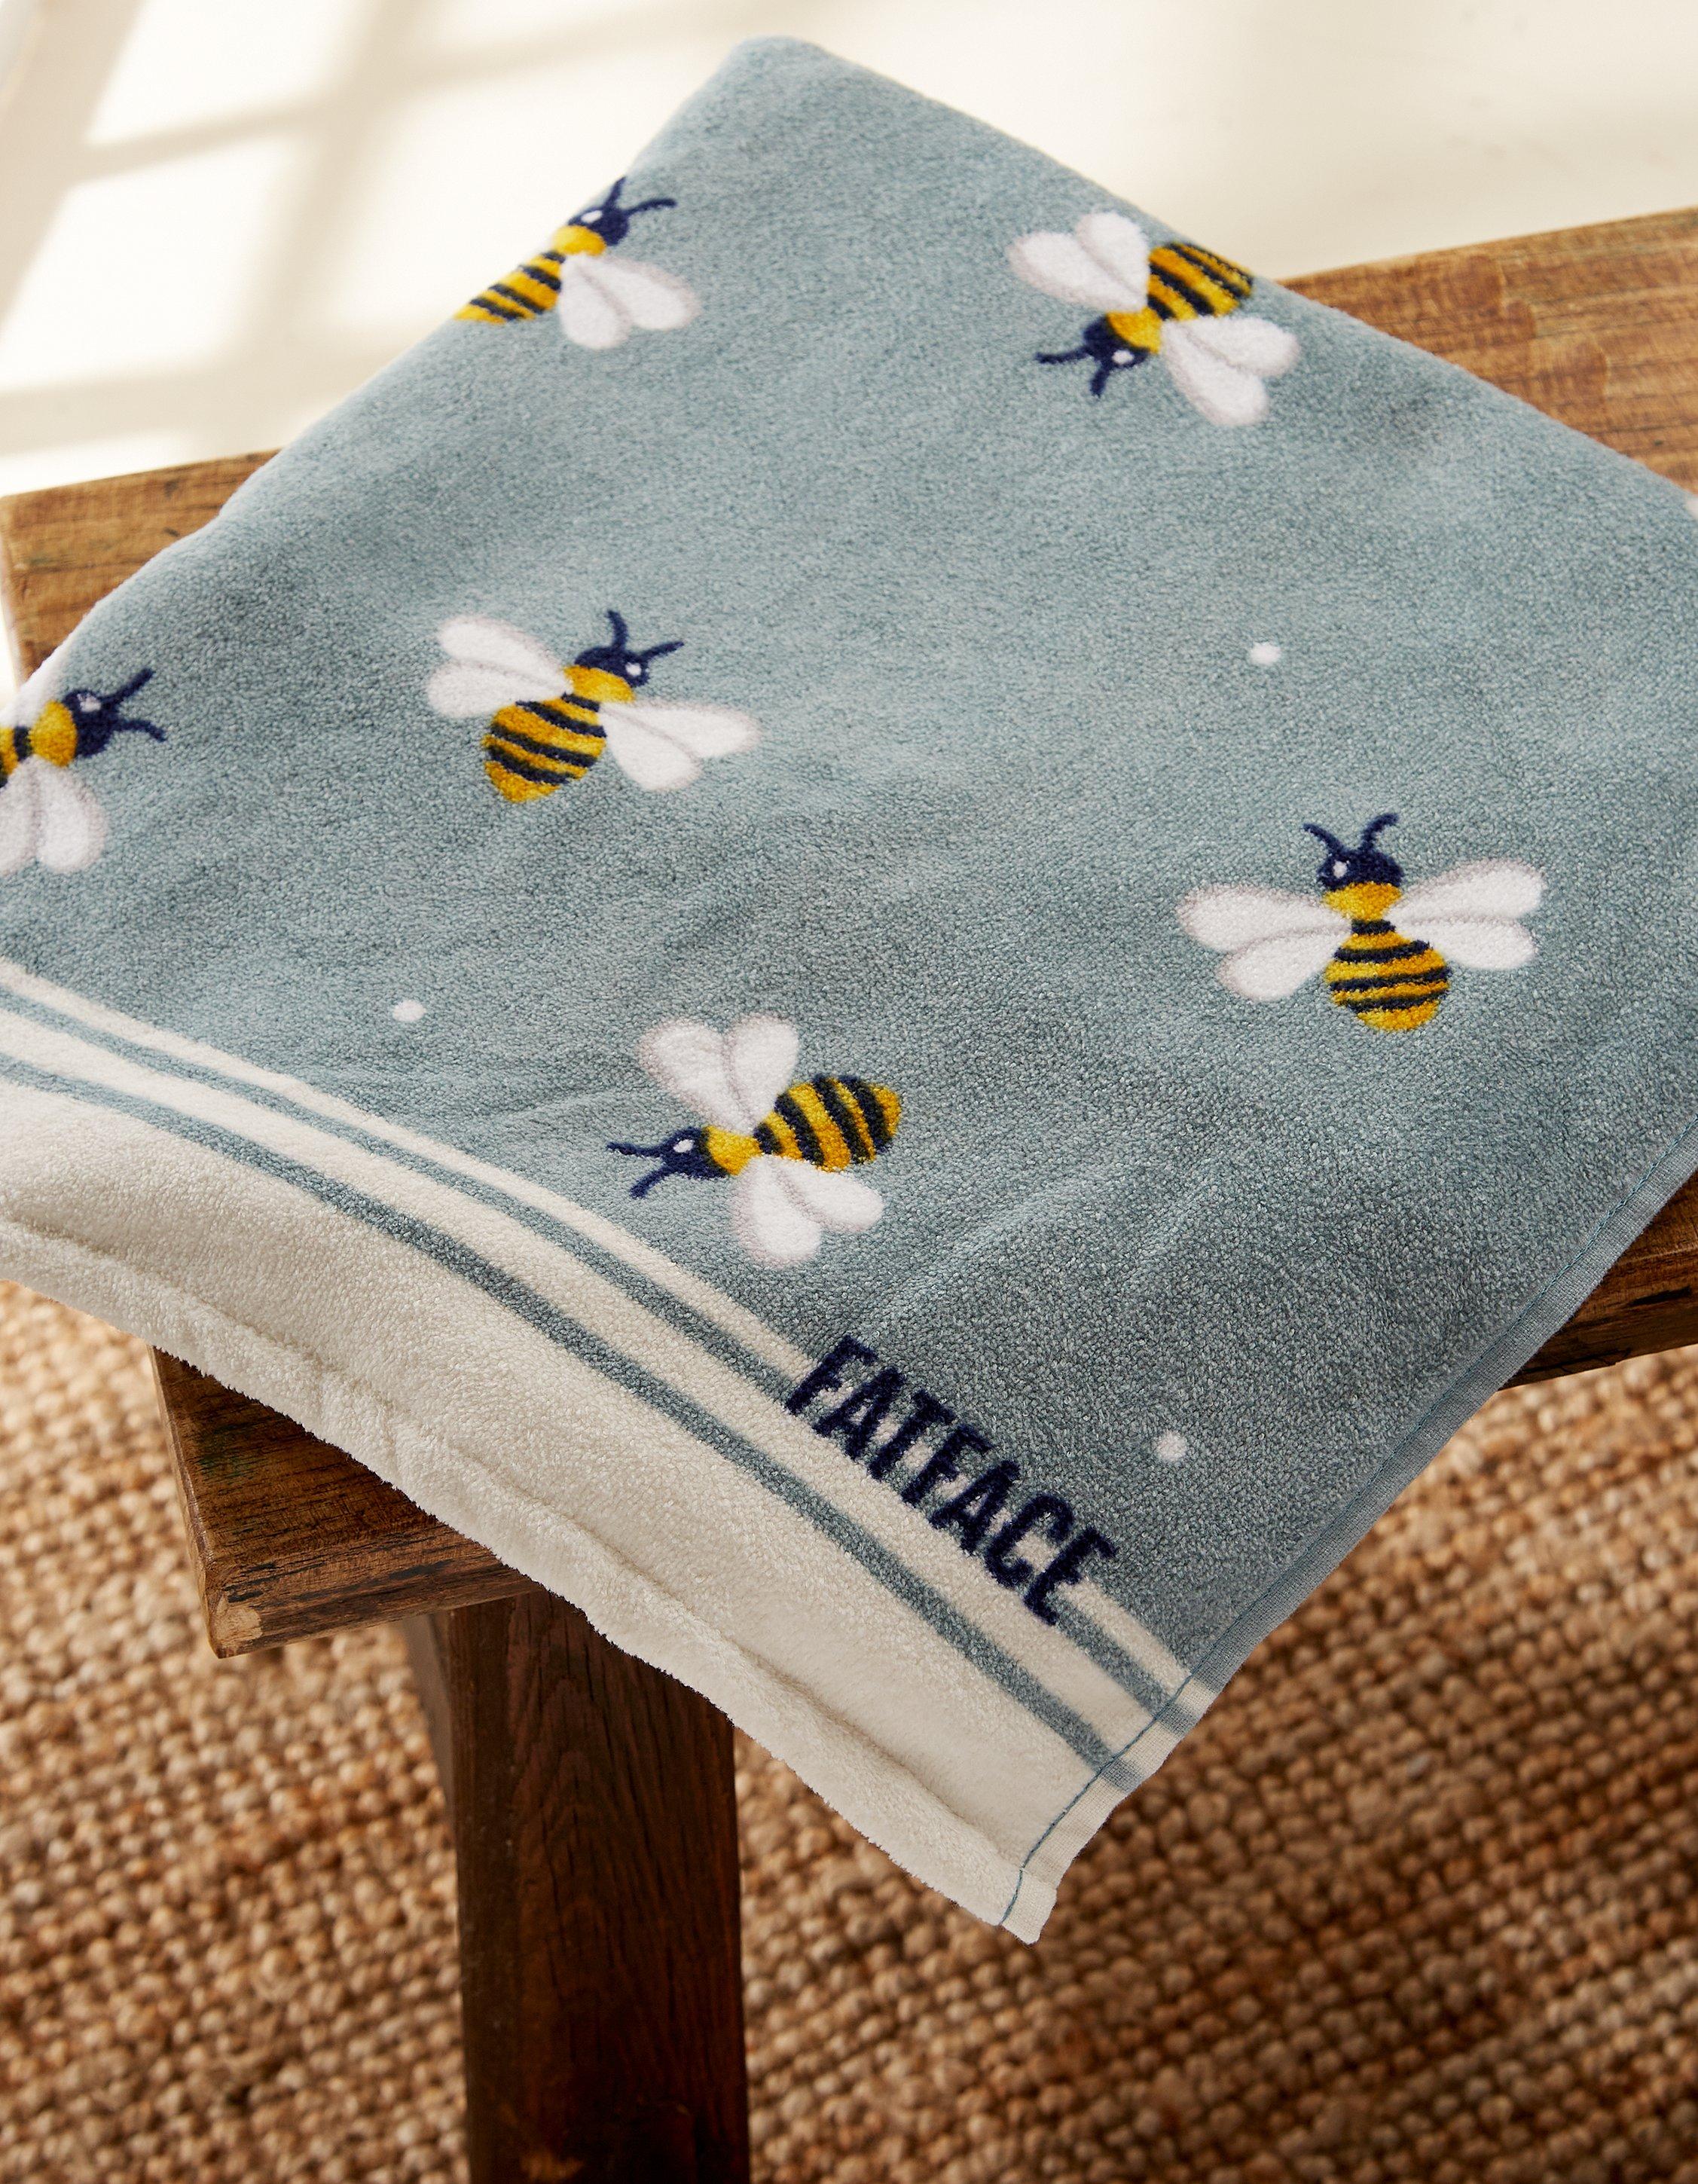 Just Bee Happy Tea Towel - Set of 2 August Grove